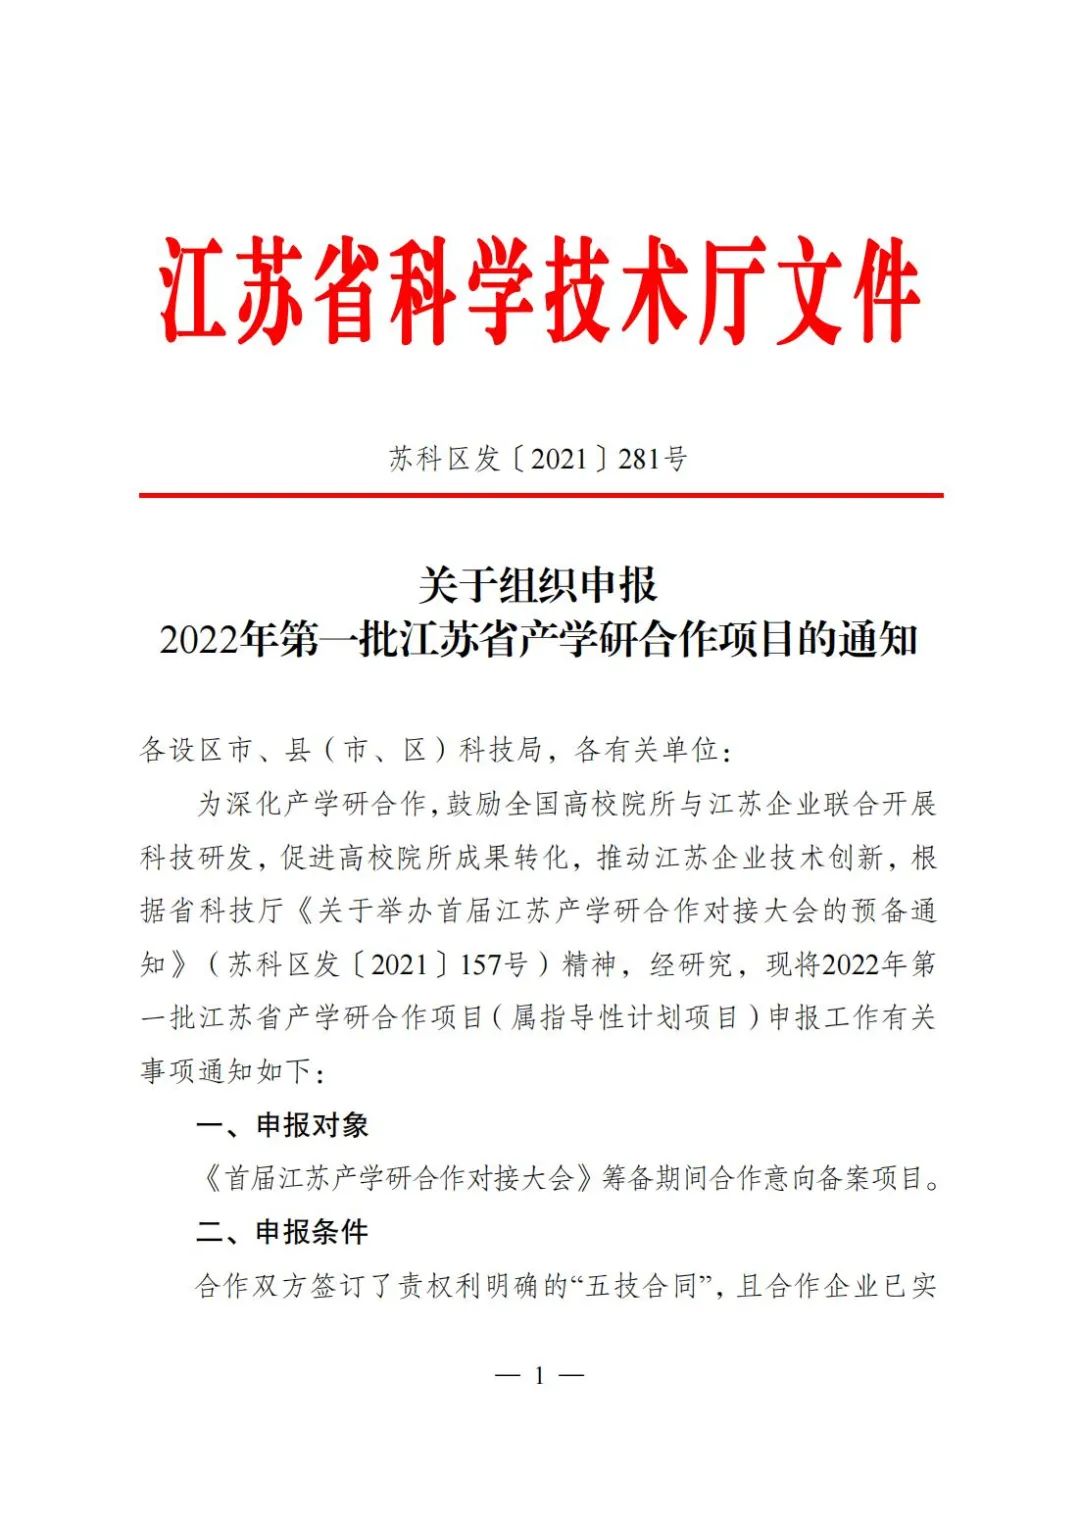 關于組織申報2022年第一批江蘇省產學研合作項目通知1.jpg